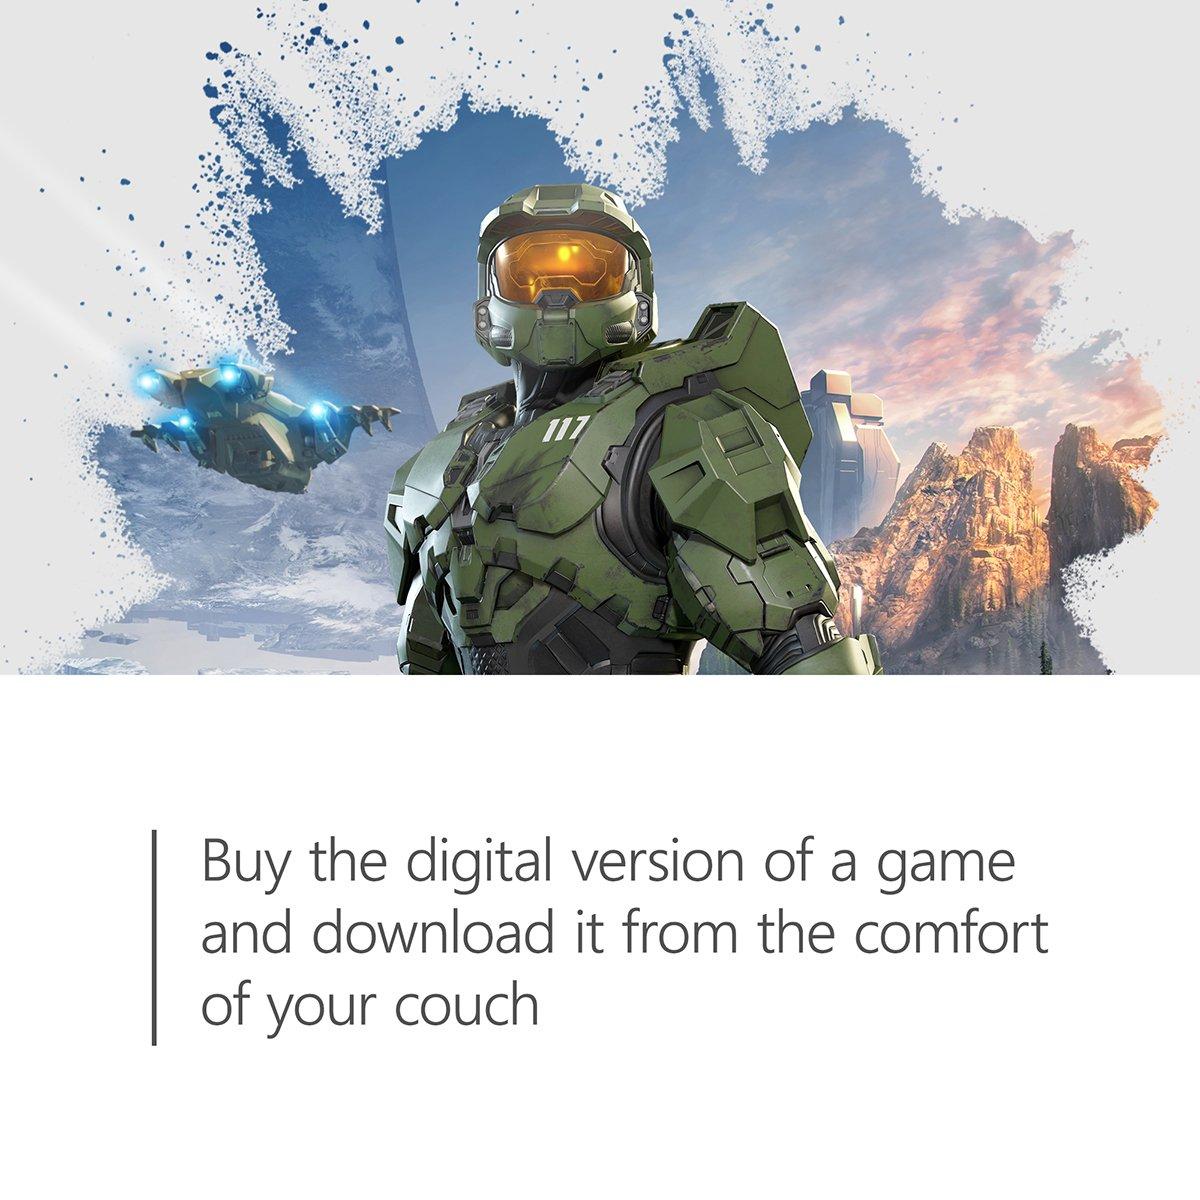  $60 Xbox Gift Card [Digital Code]